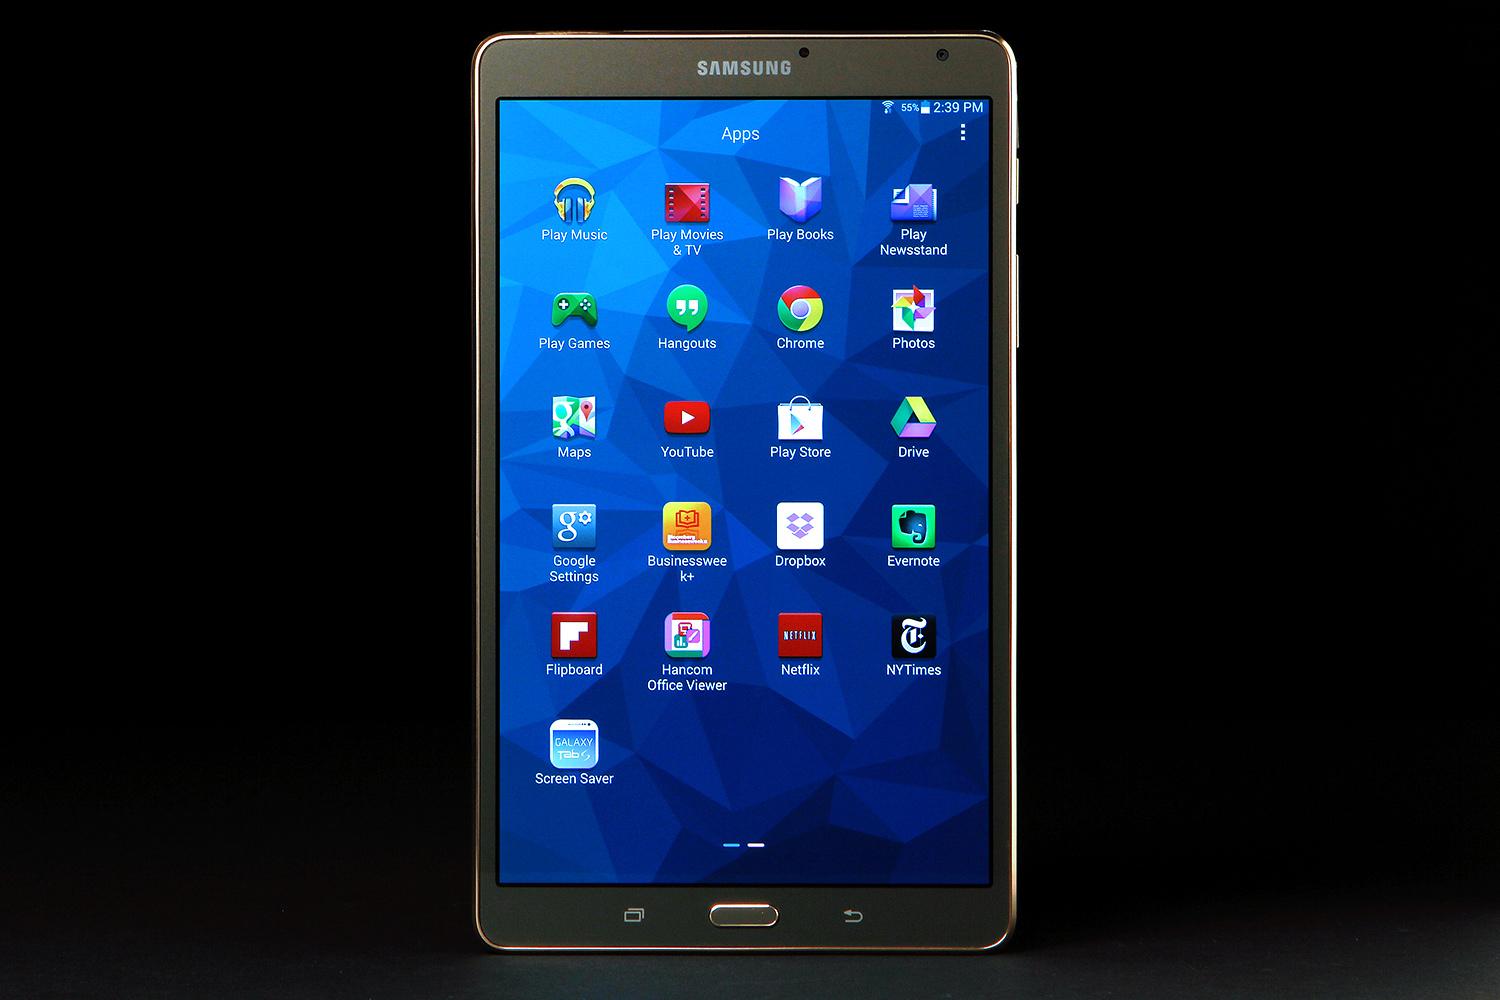 Persona con experiencia Represalias superstición Samsung Galaxy Tab S 8.4 review | Digital Trends